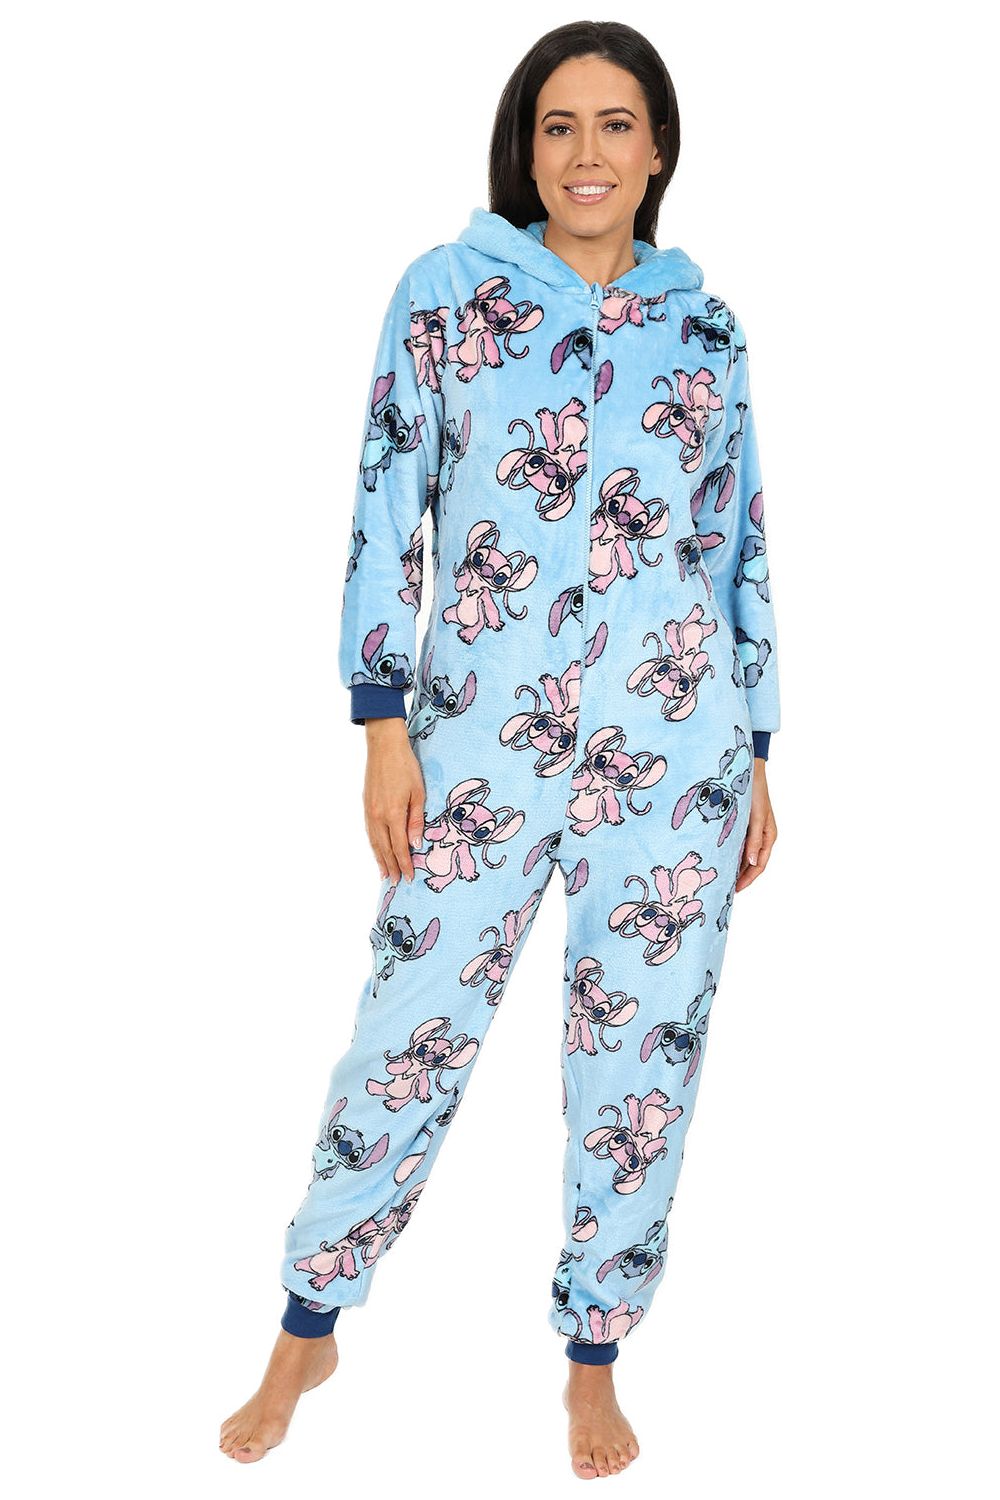 Disney Women's Stitch & Angel Blue Fleece Sleepsuit All in One